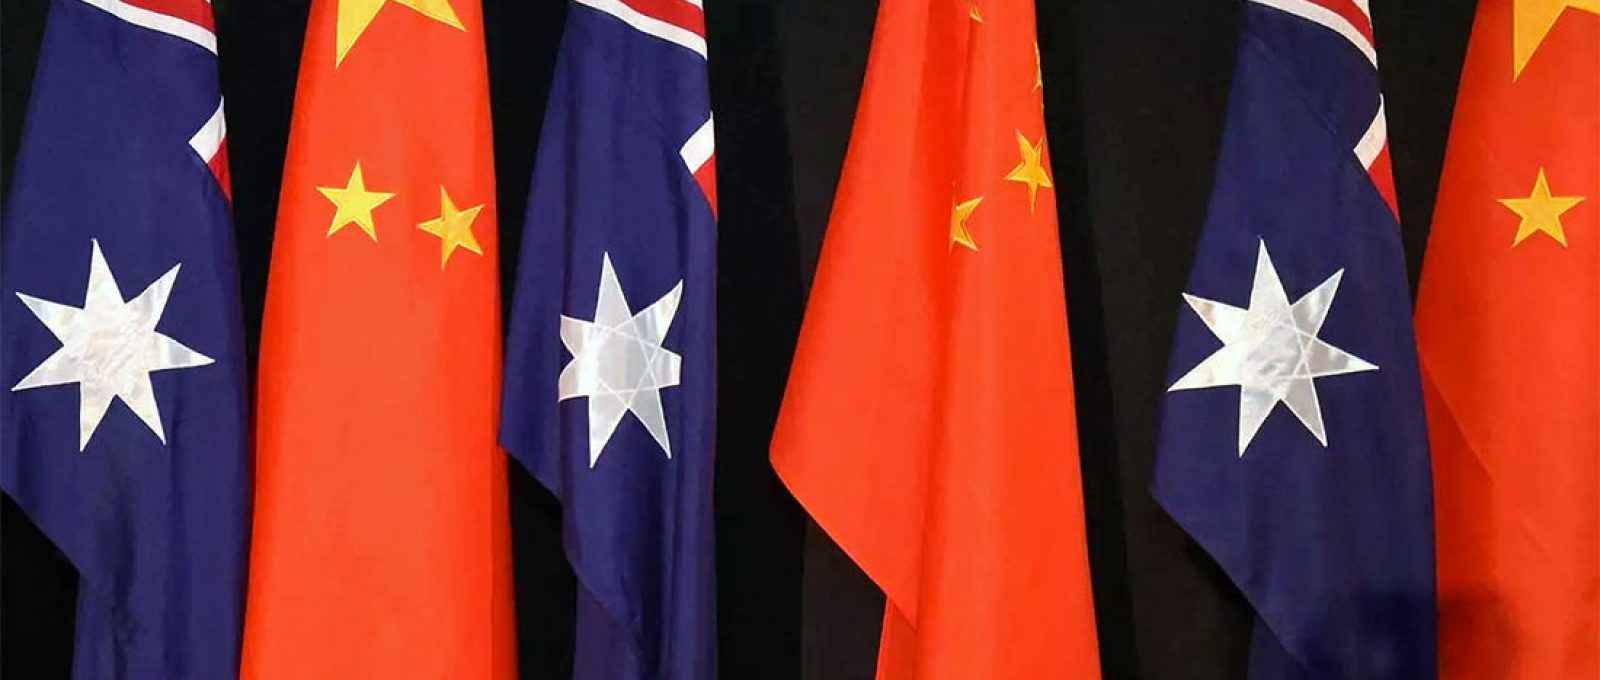 A China  suspendeu um acordo econômico com a Austrália, piorando a já conturbada relação entre os países em meio a altercações sobre a pandemia do covid-19 e acusações de abusos de direitos humanos (Foto: Lukas Coch/AFP).